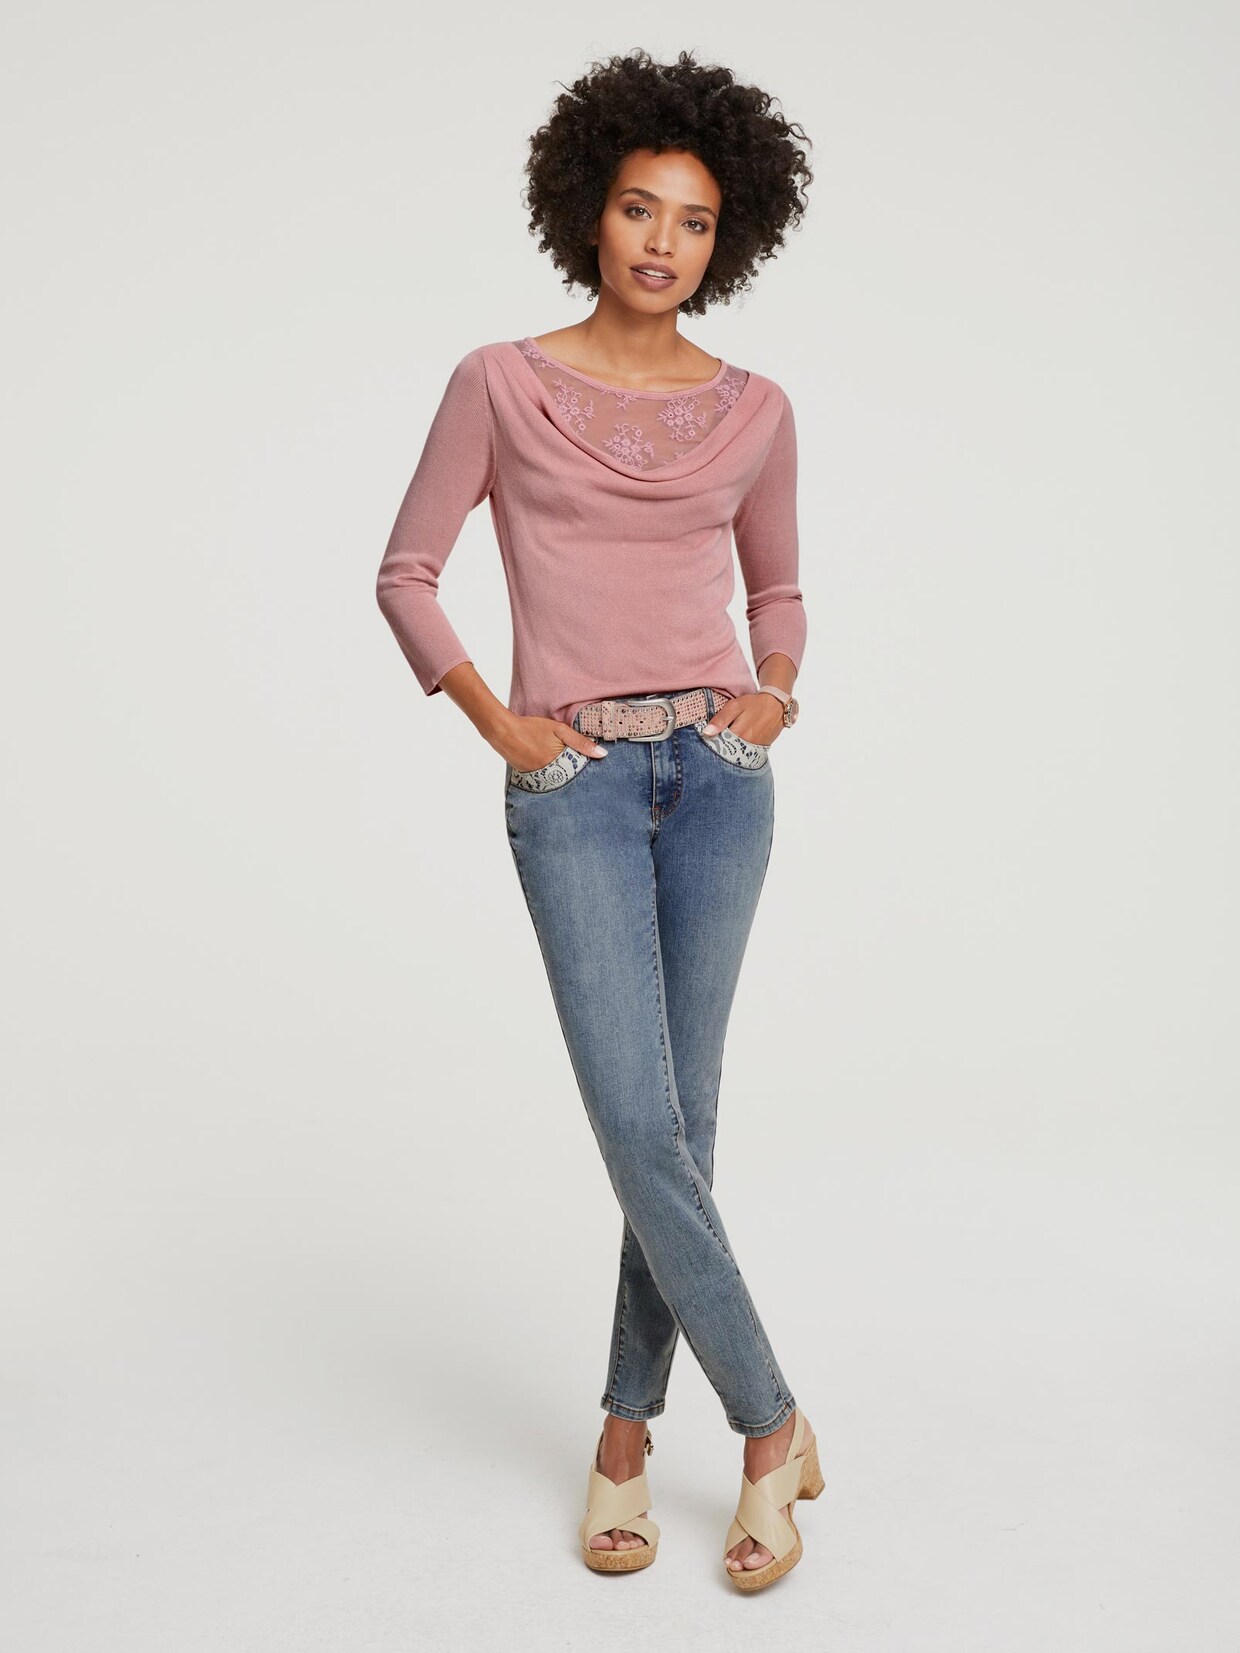 Linea Tesini Pullover - rozenkwarts